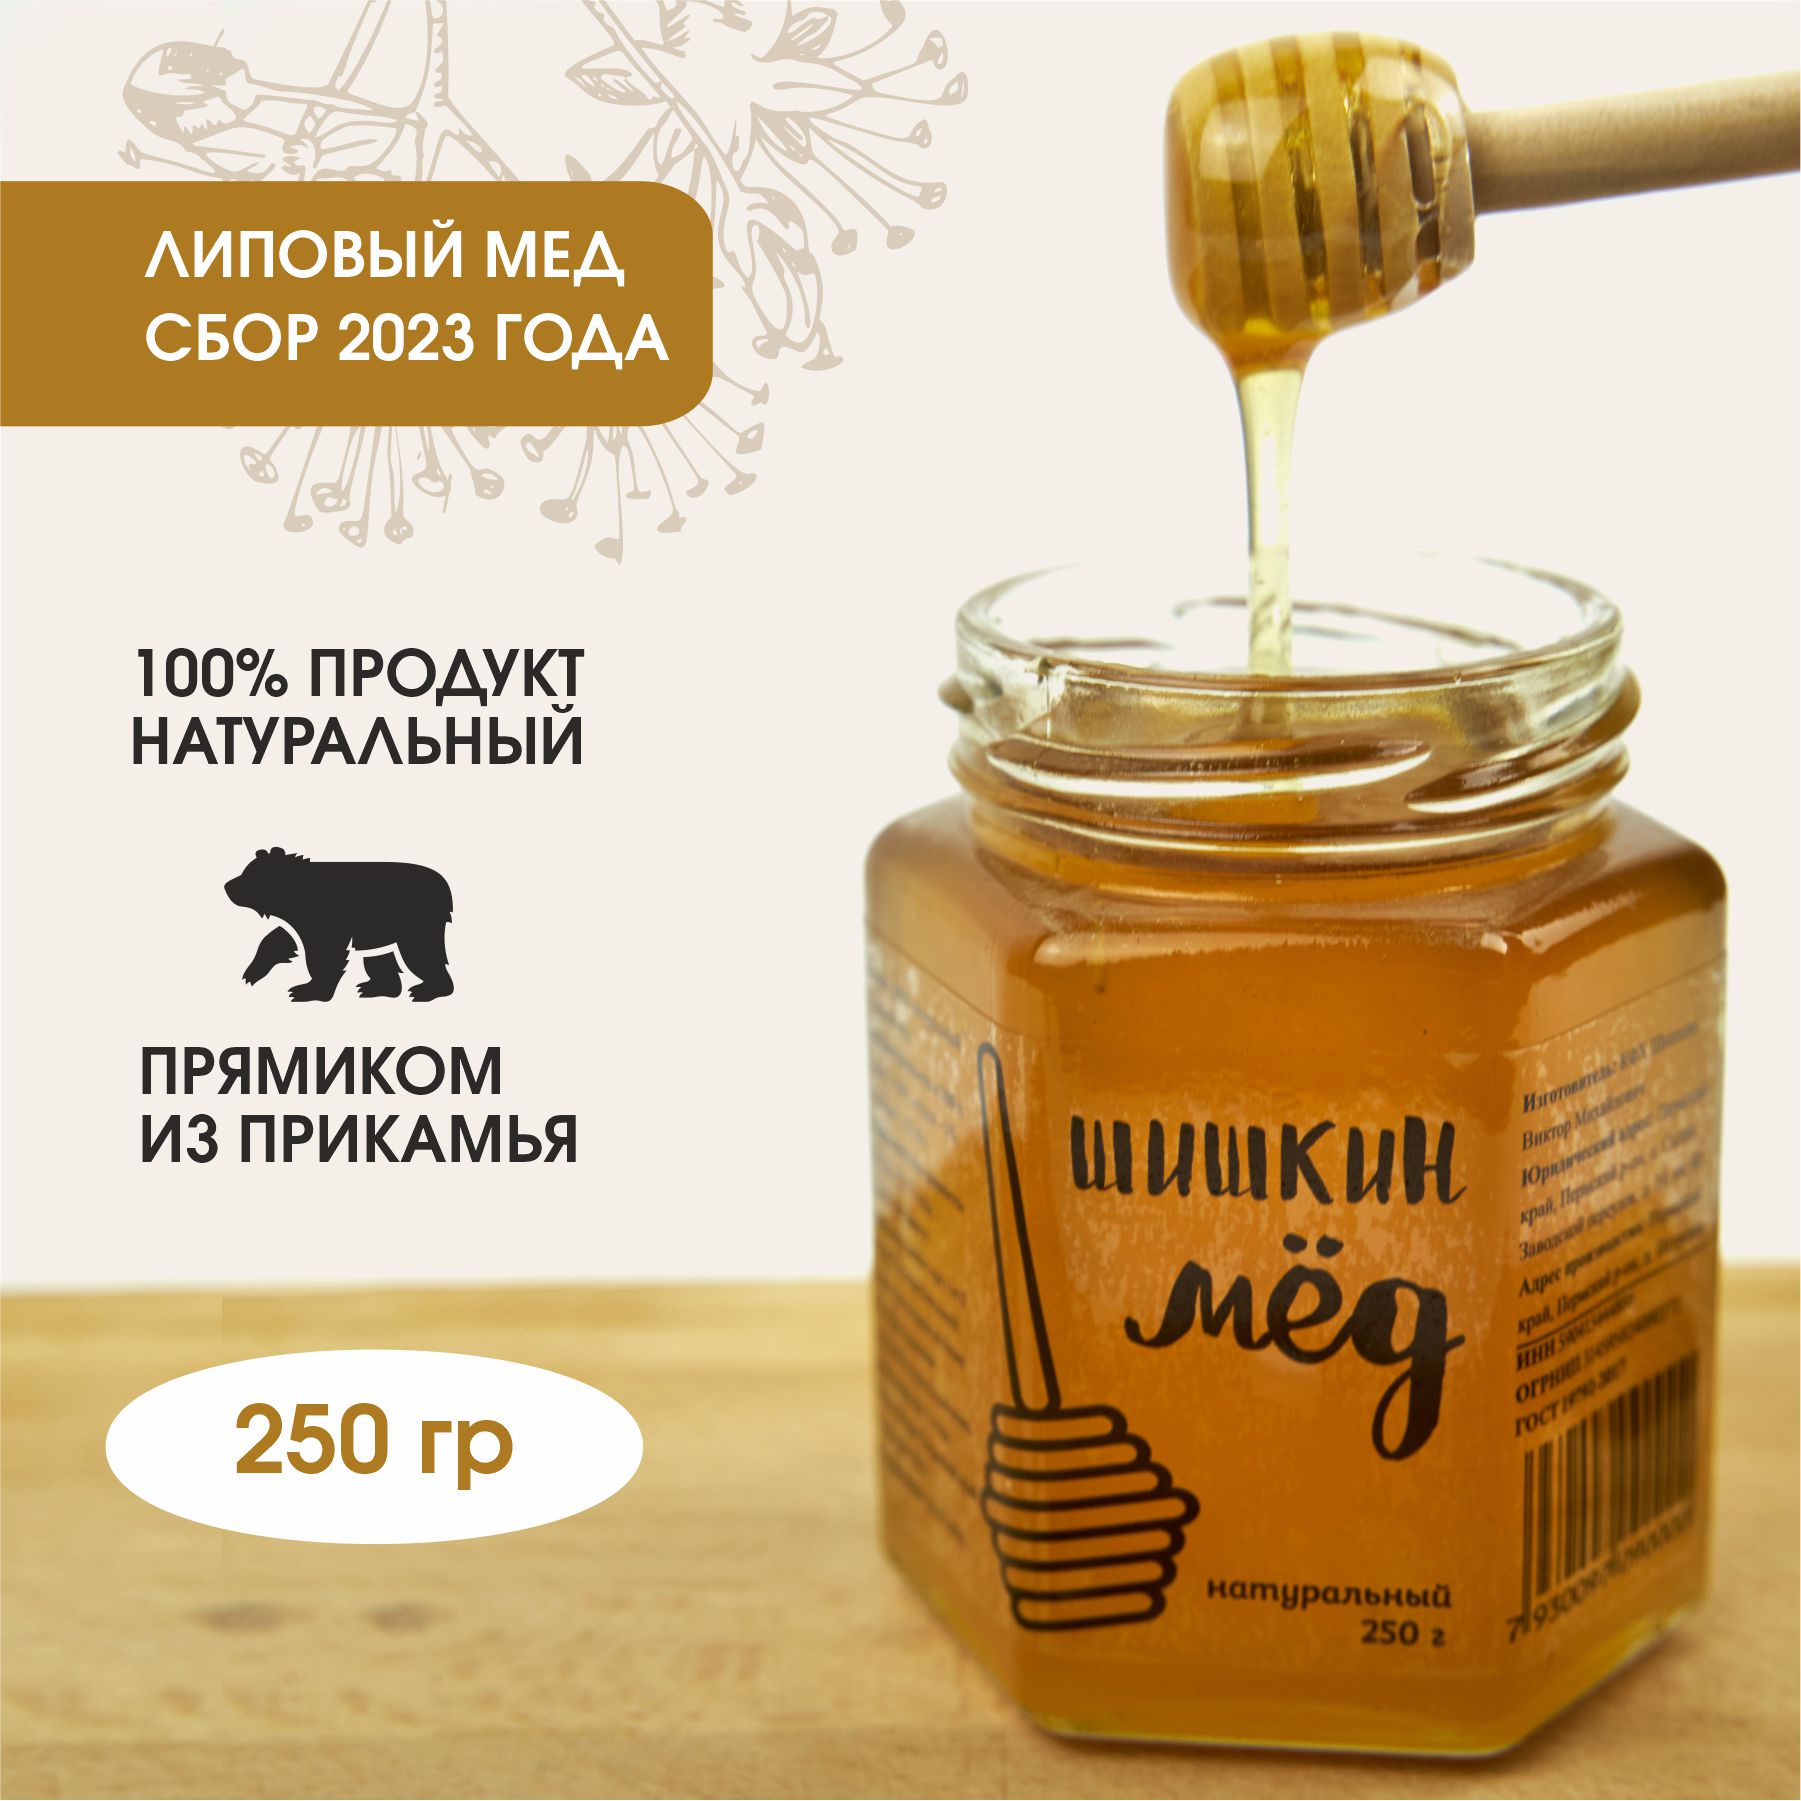 Мед Шишкин мед натуральный липовый, 250 г